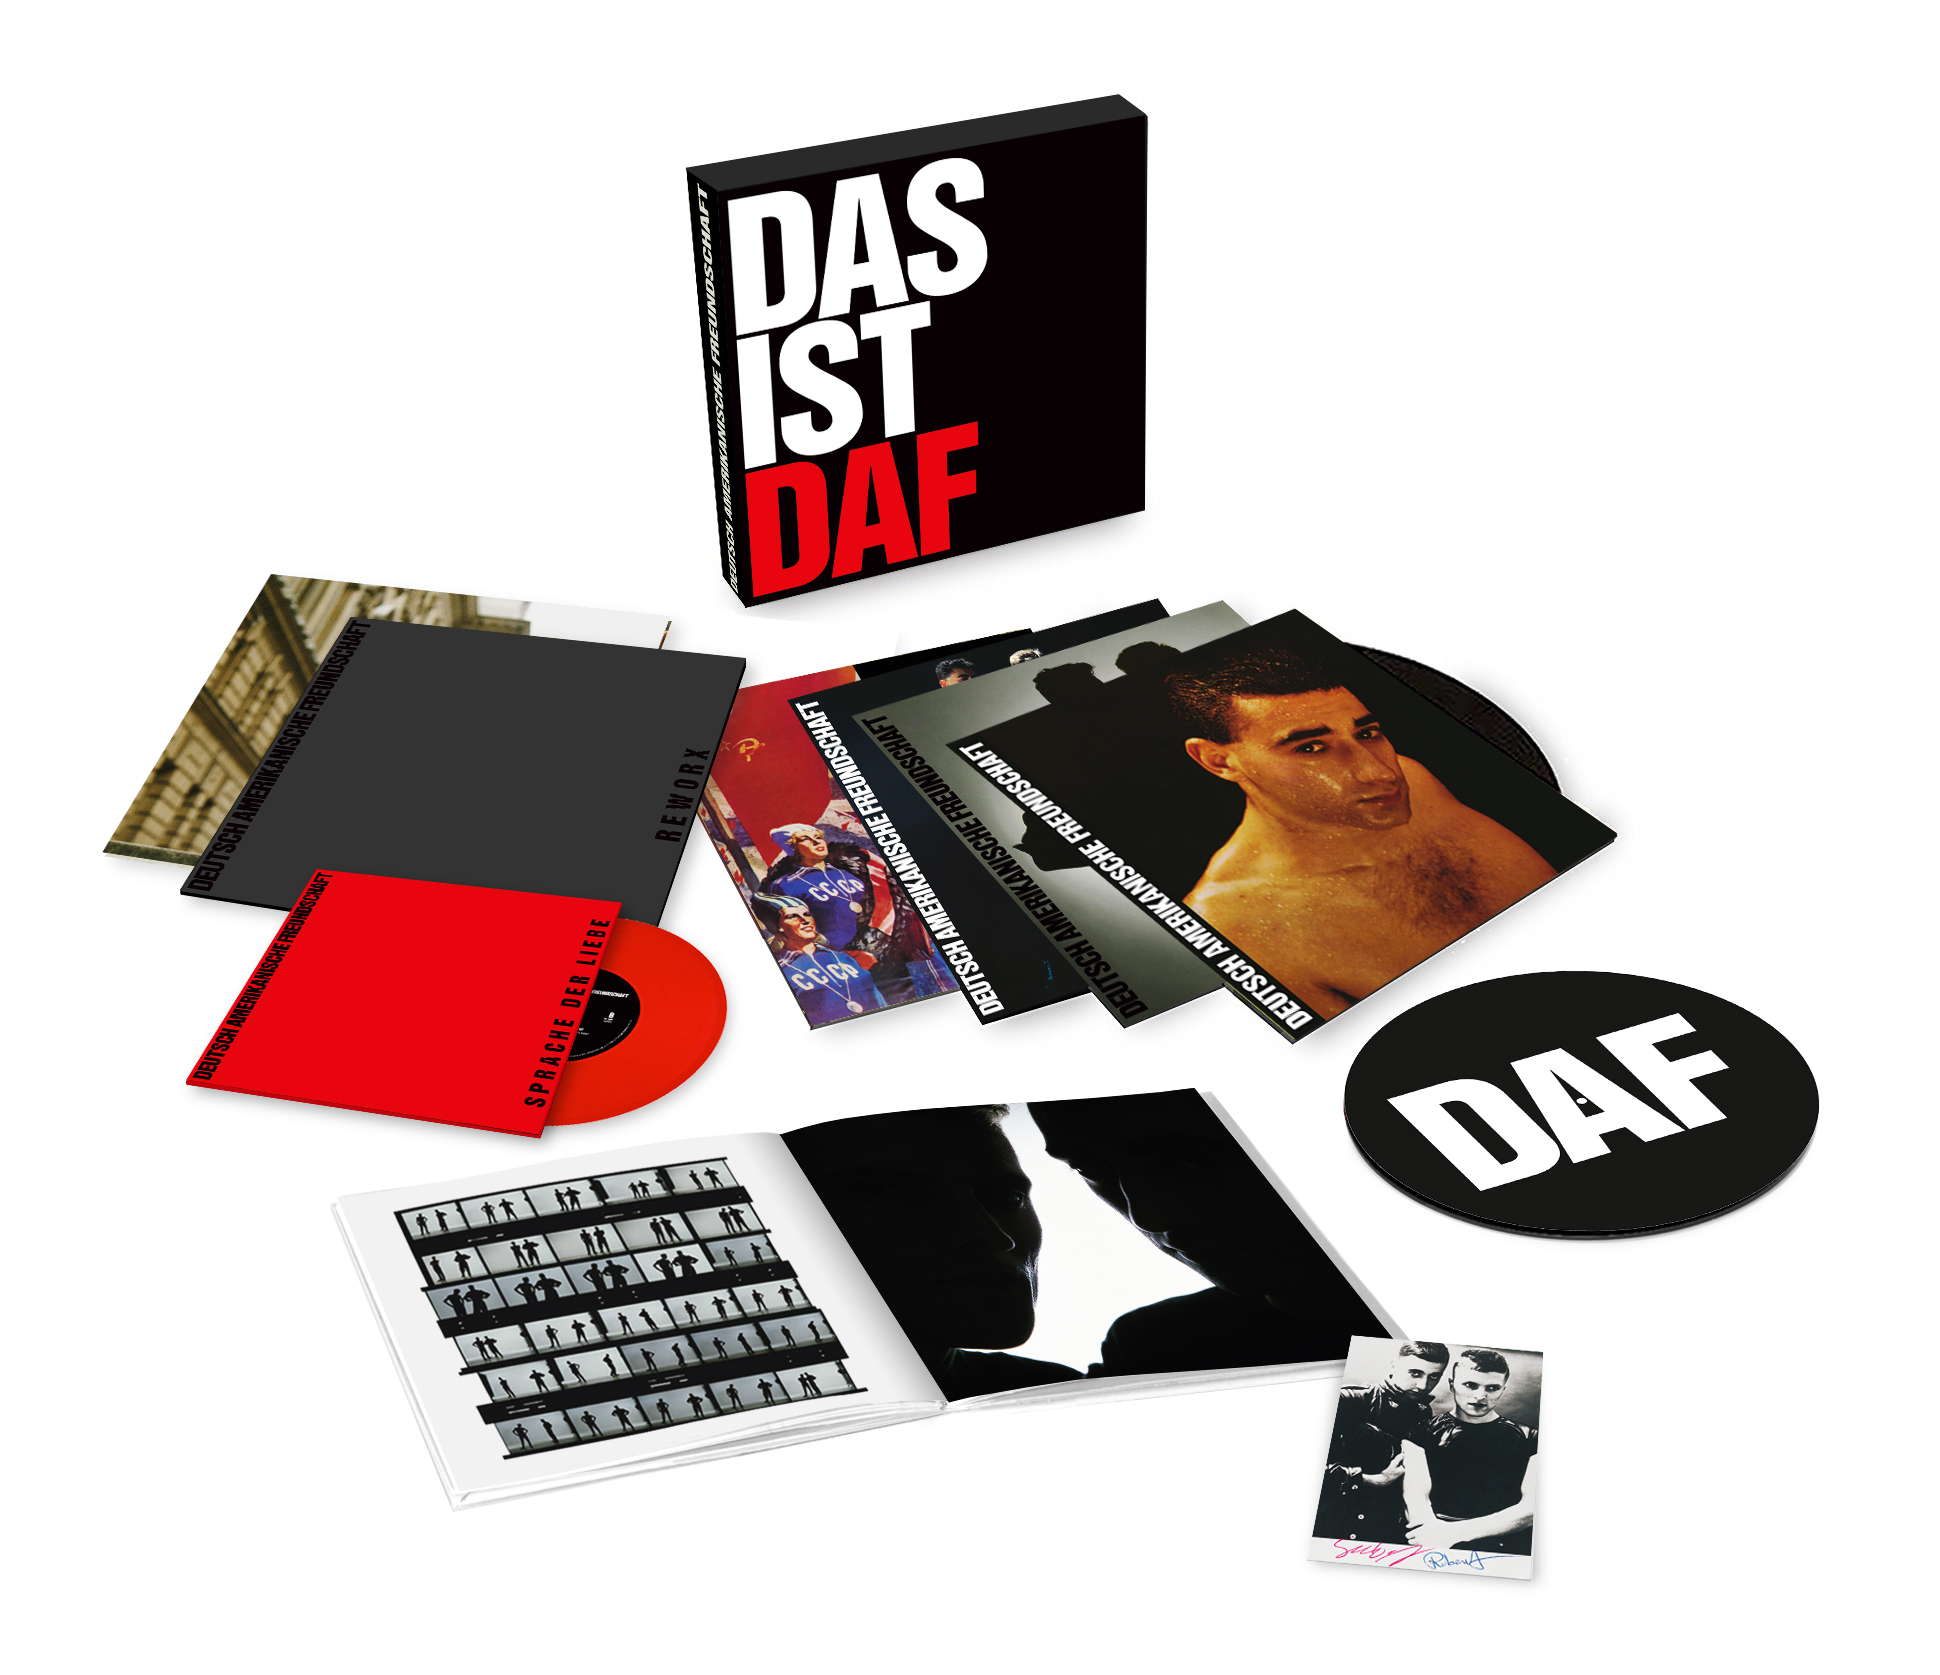 Пионеры техно DAF переиздадут 4 альбома в рамках бокс-сета «DAS IST DAF»